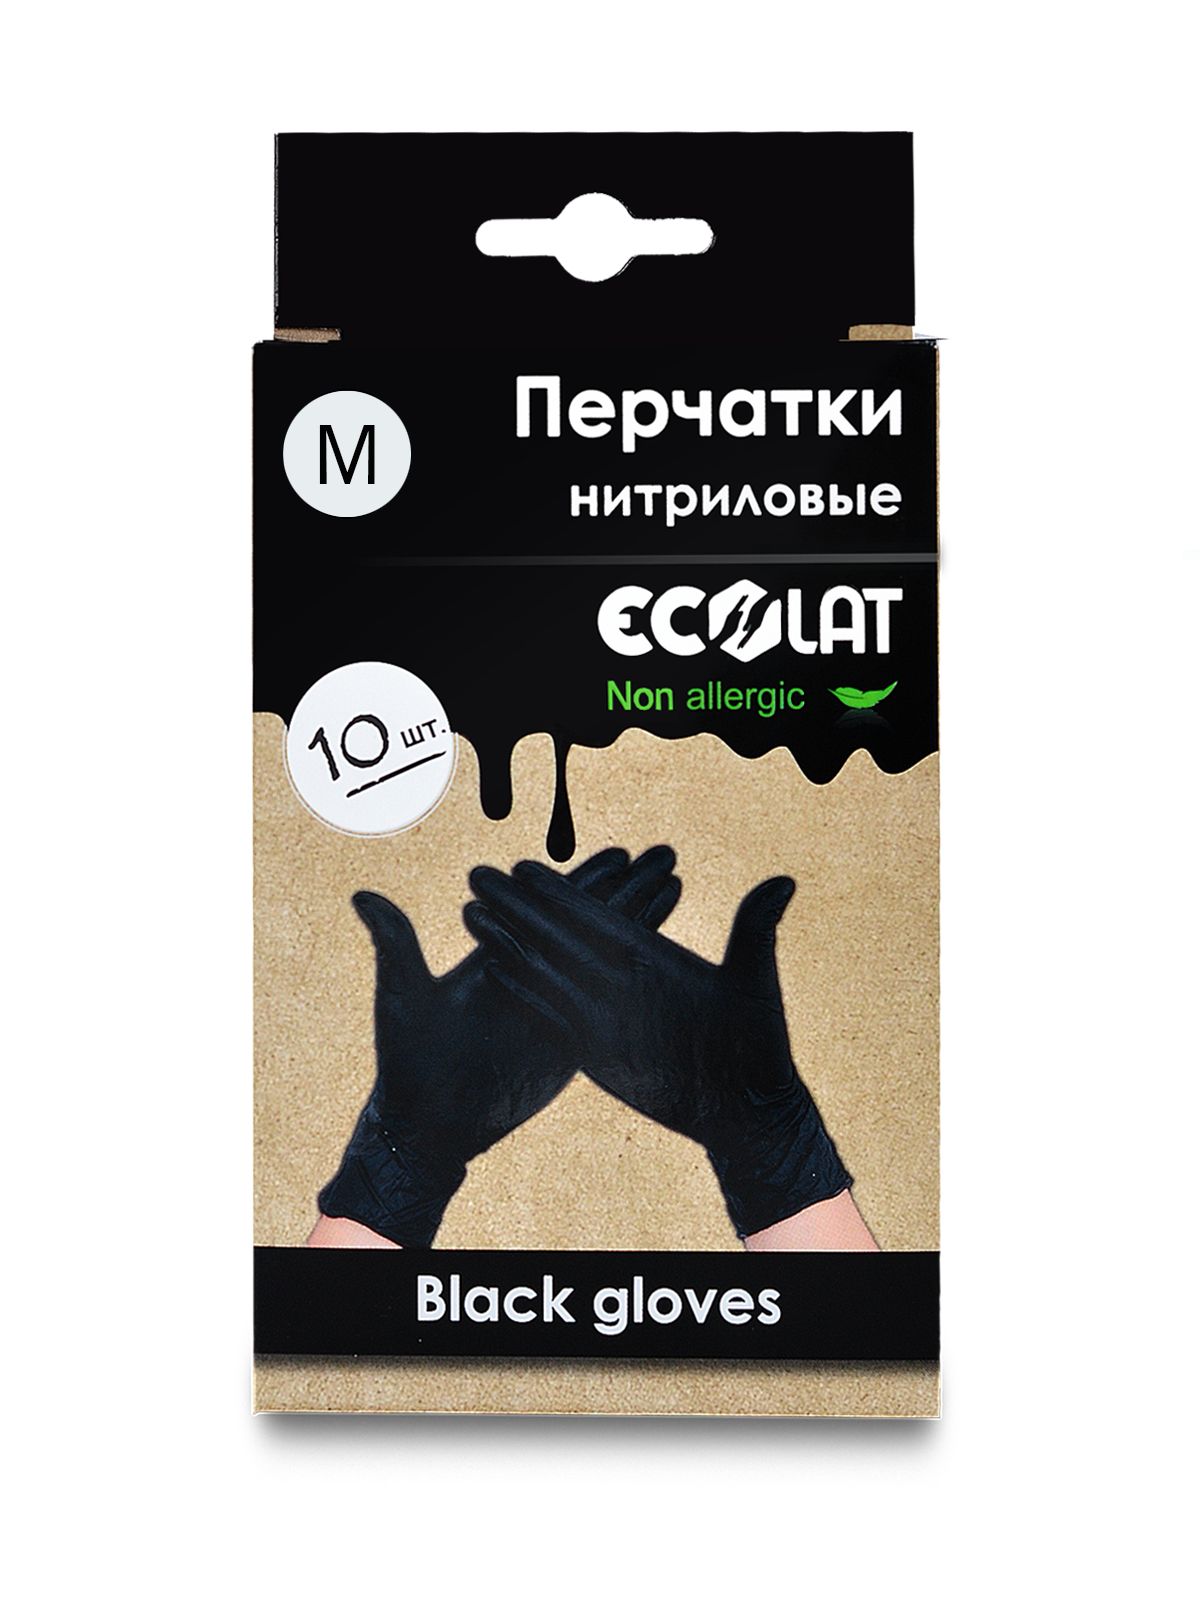 Купить Nitrile gloves, Перчатки медицинские черные EcoLat, размер M, 10 шт